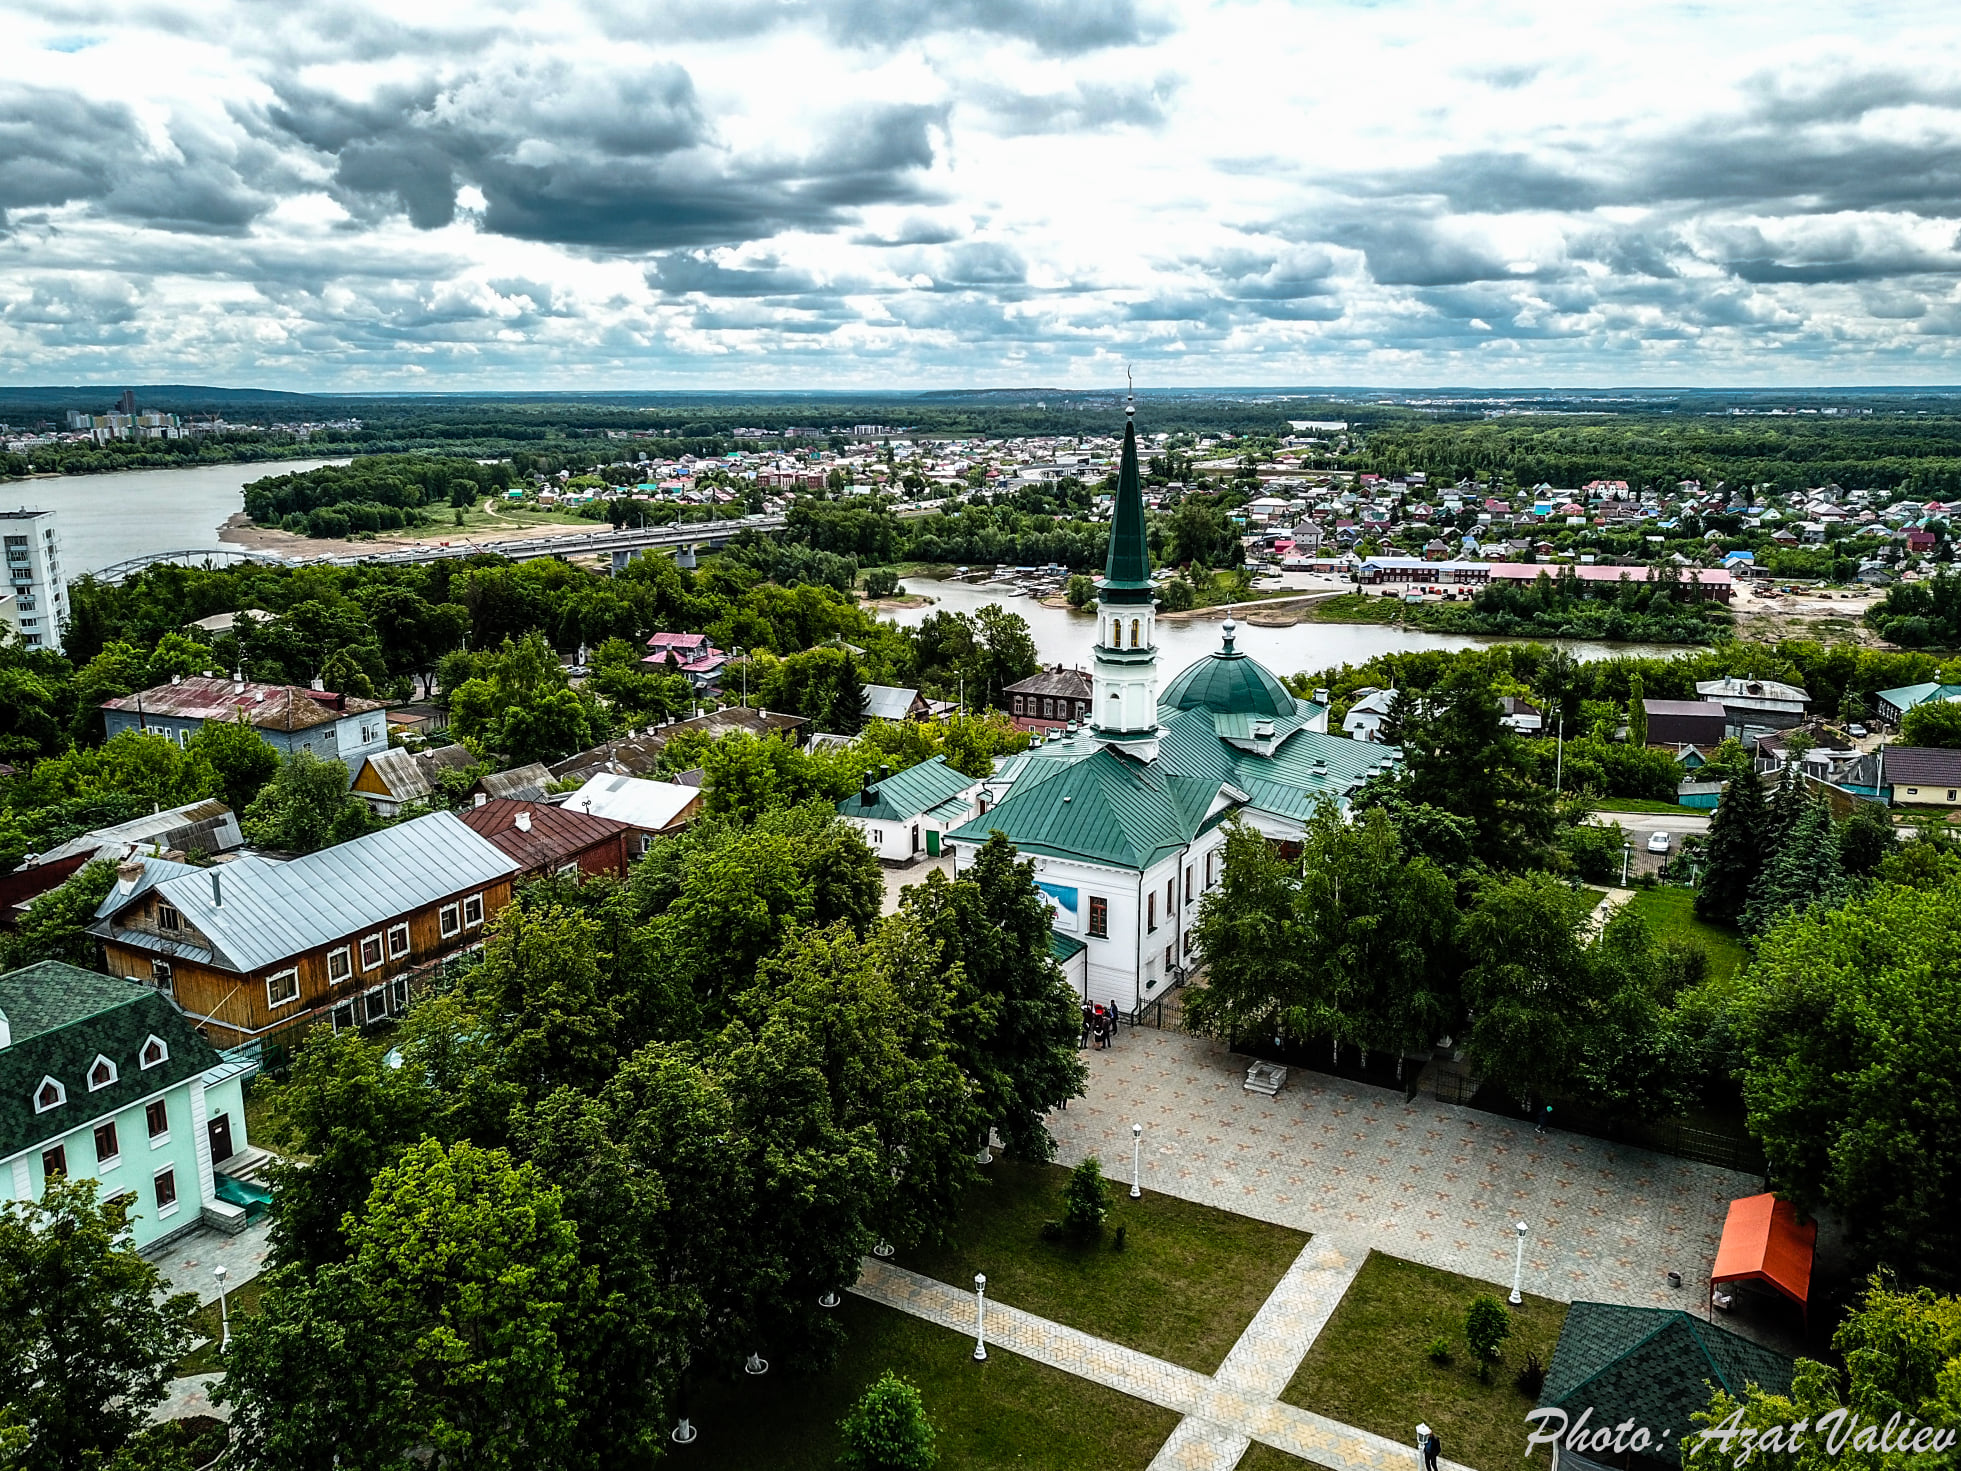 المسجد الجامع الأول في مدينة "أوفا" كان يعد المسجد الأهم في روسيا حتى العام 1920م